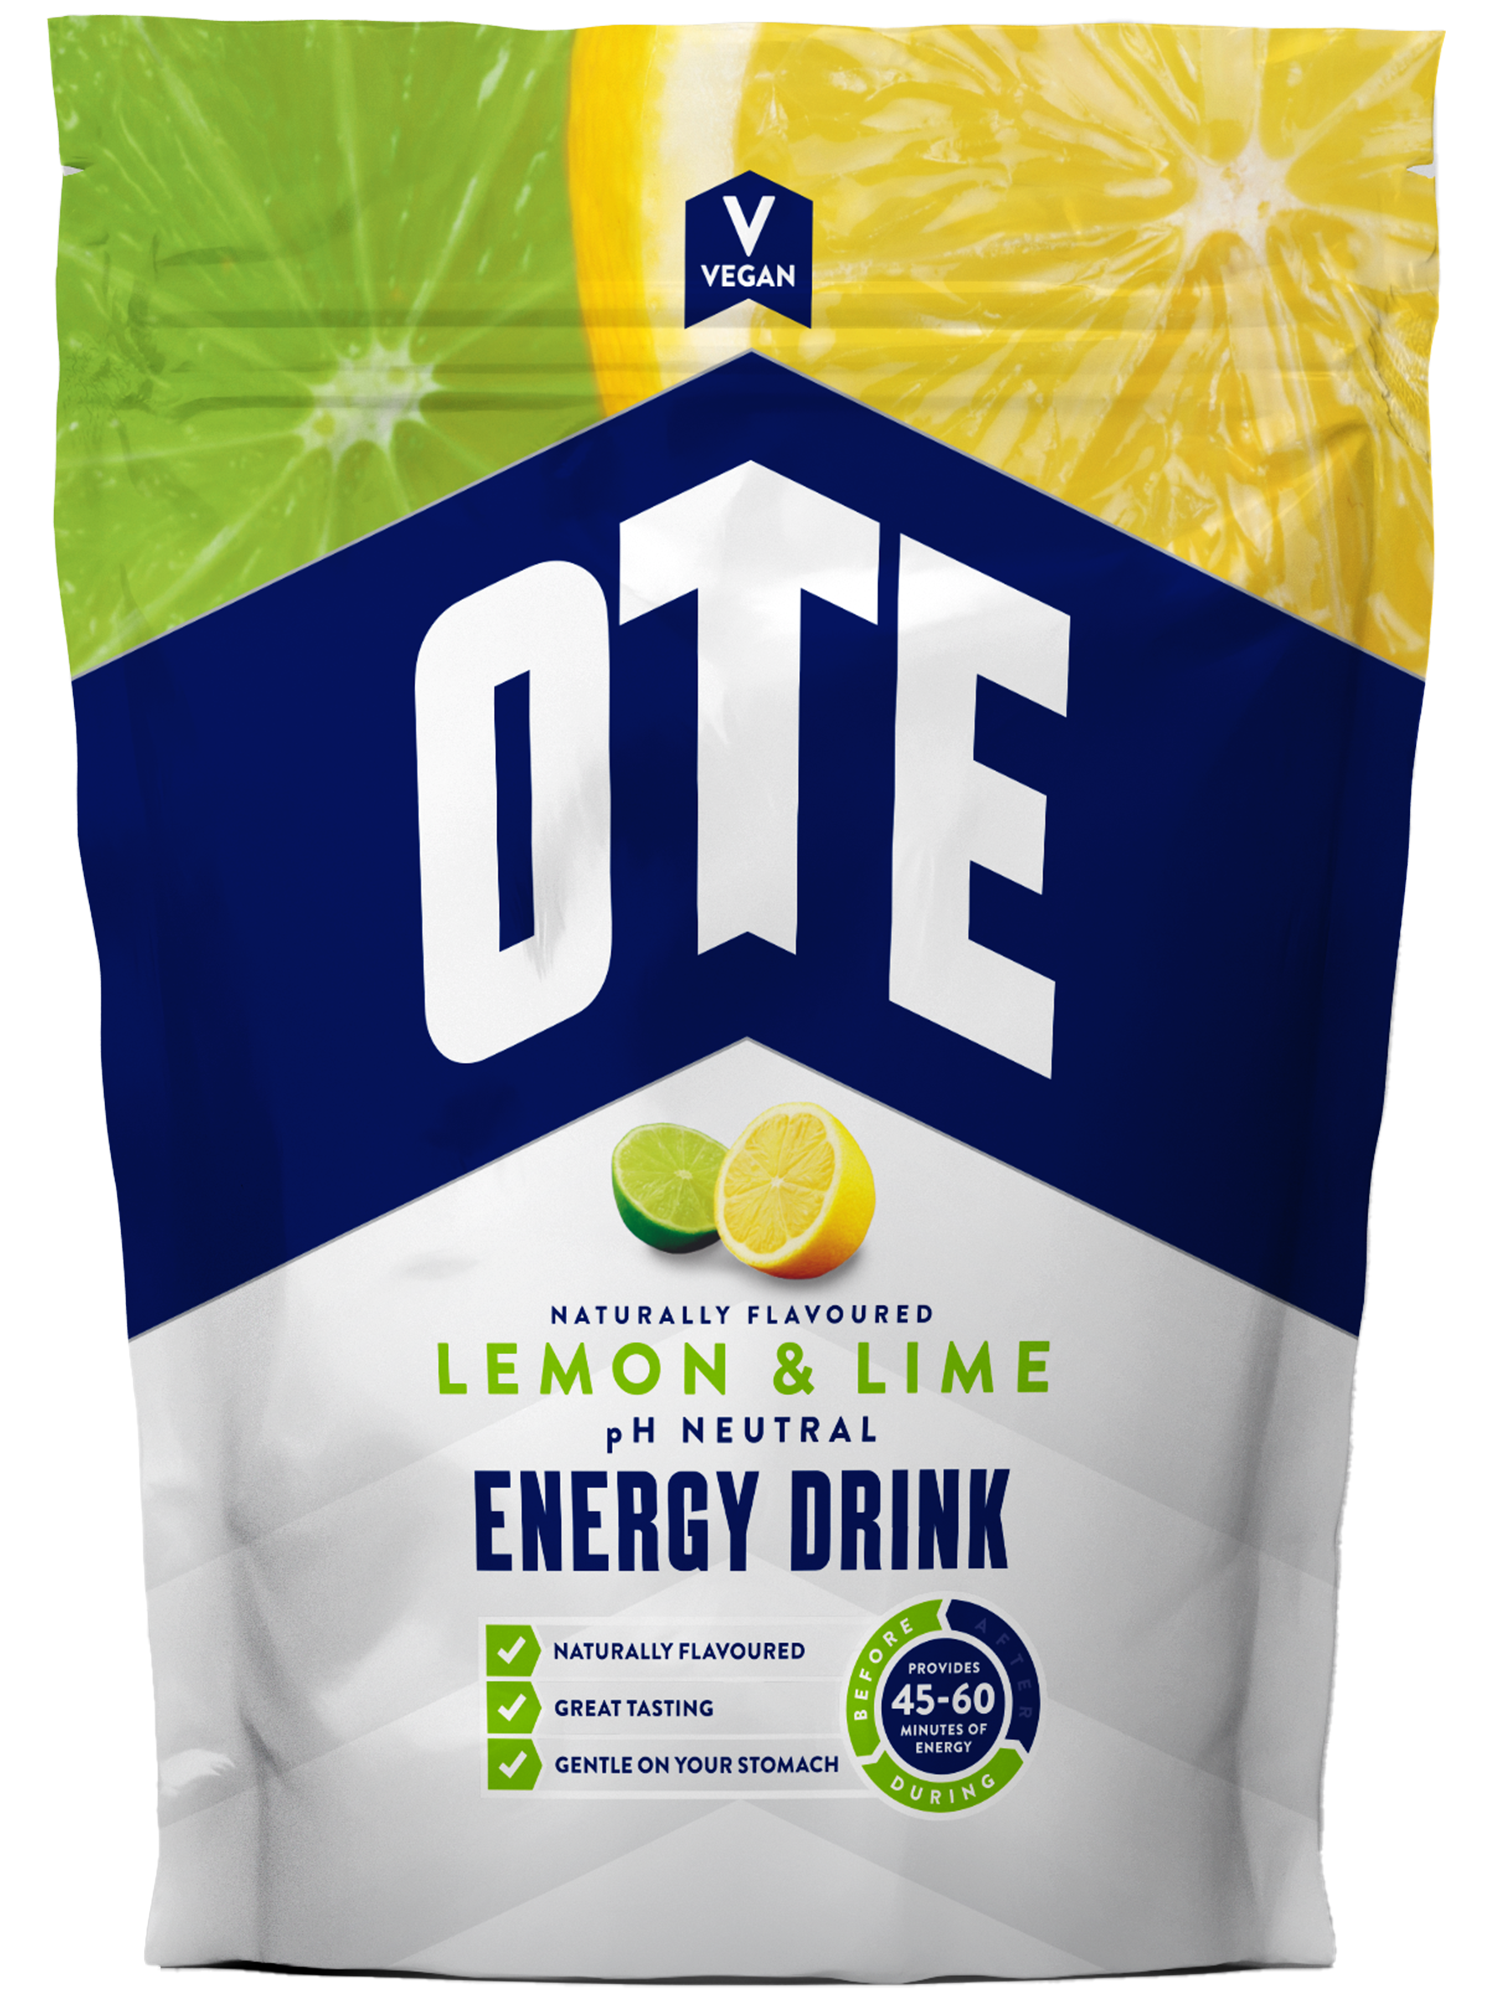 Lemon & Lime energy drink